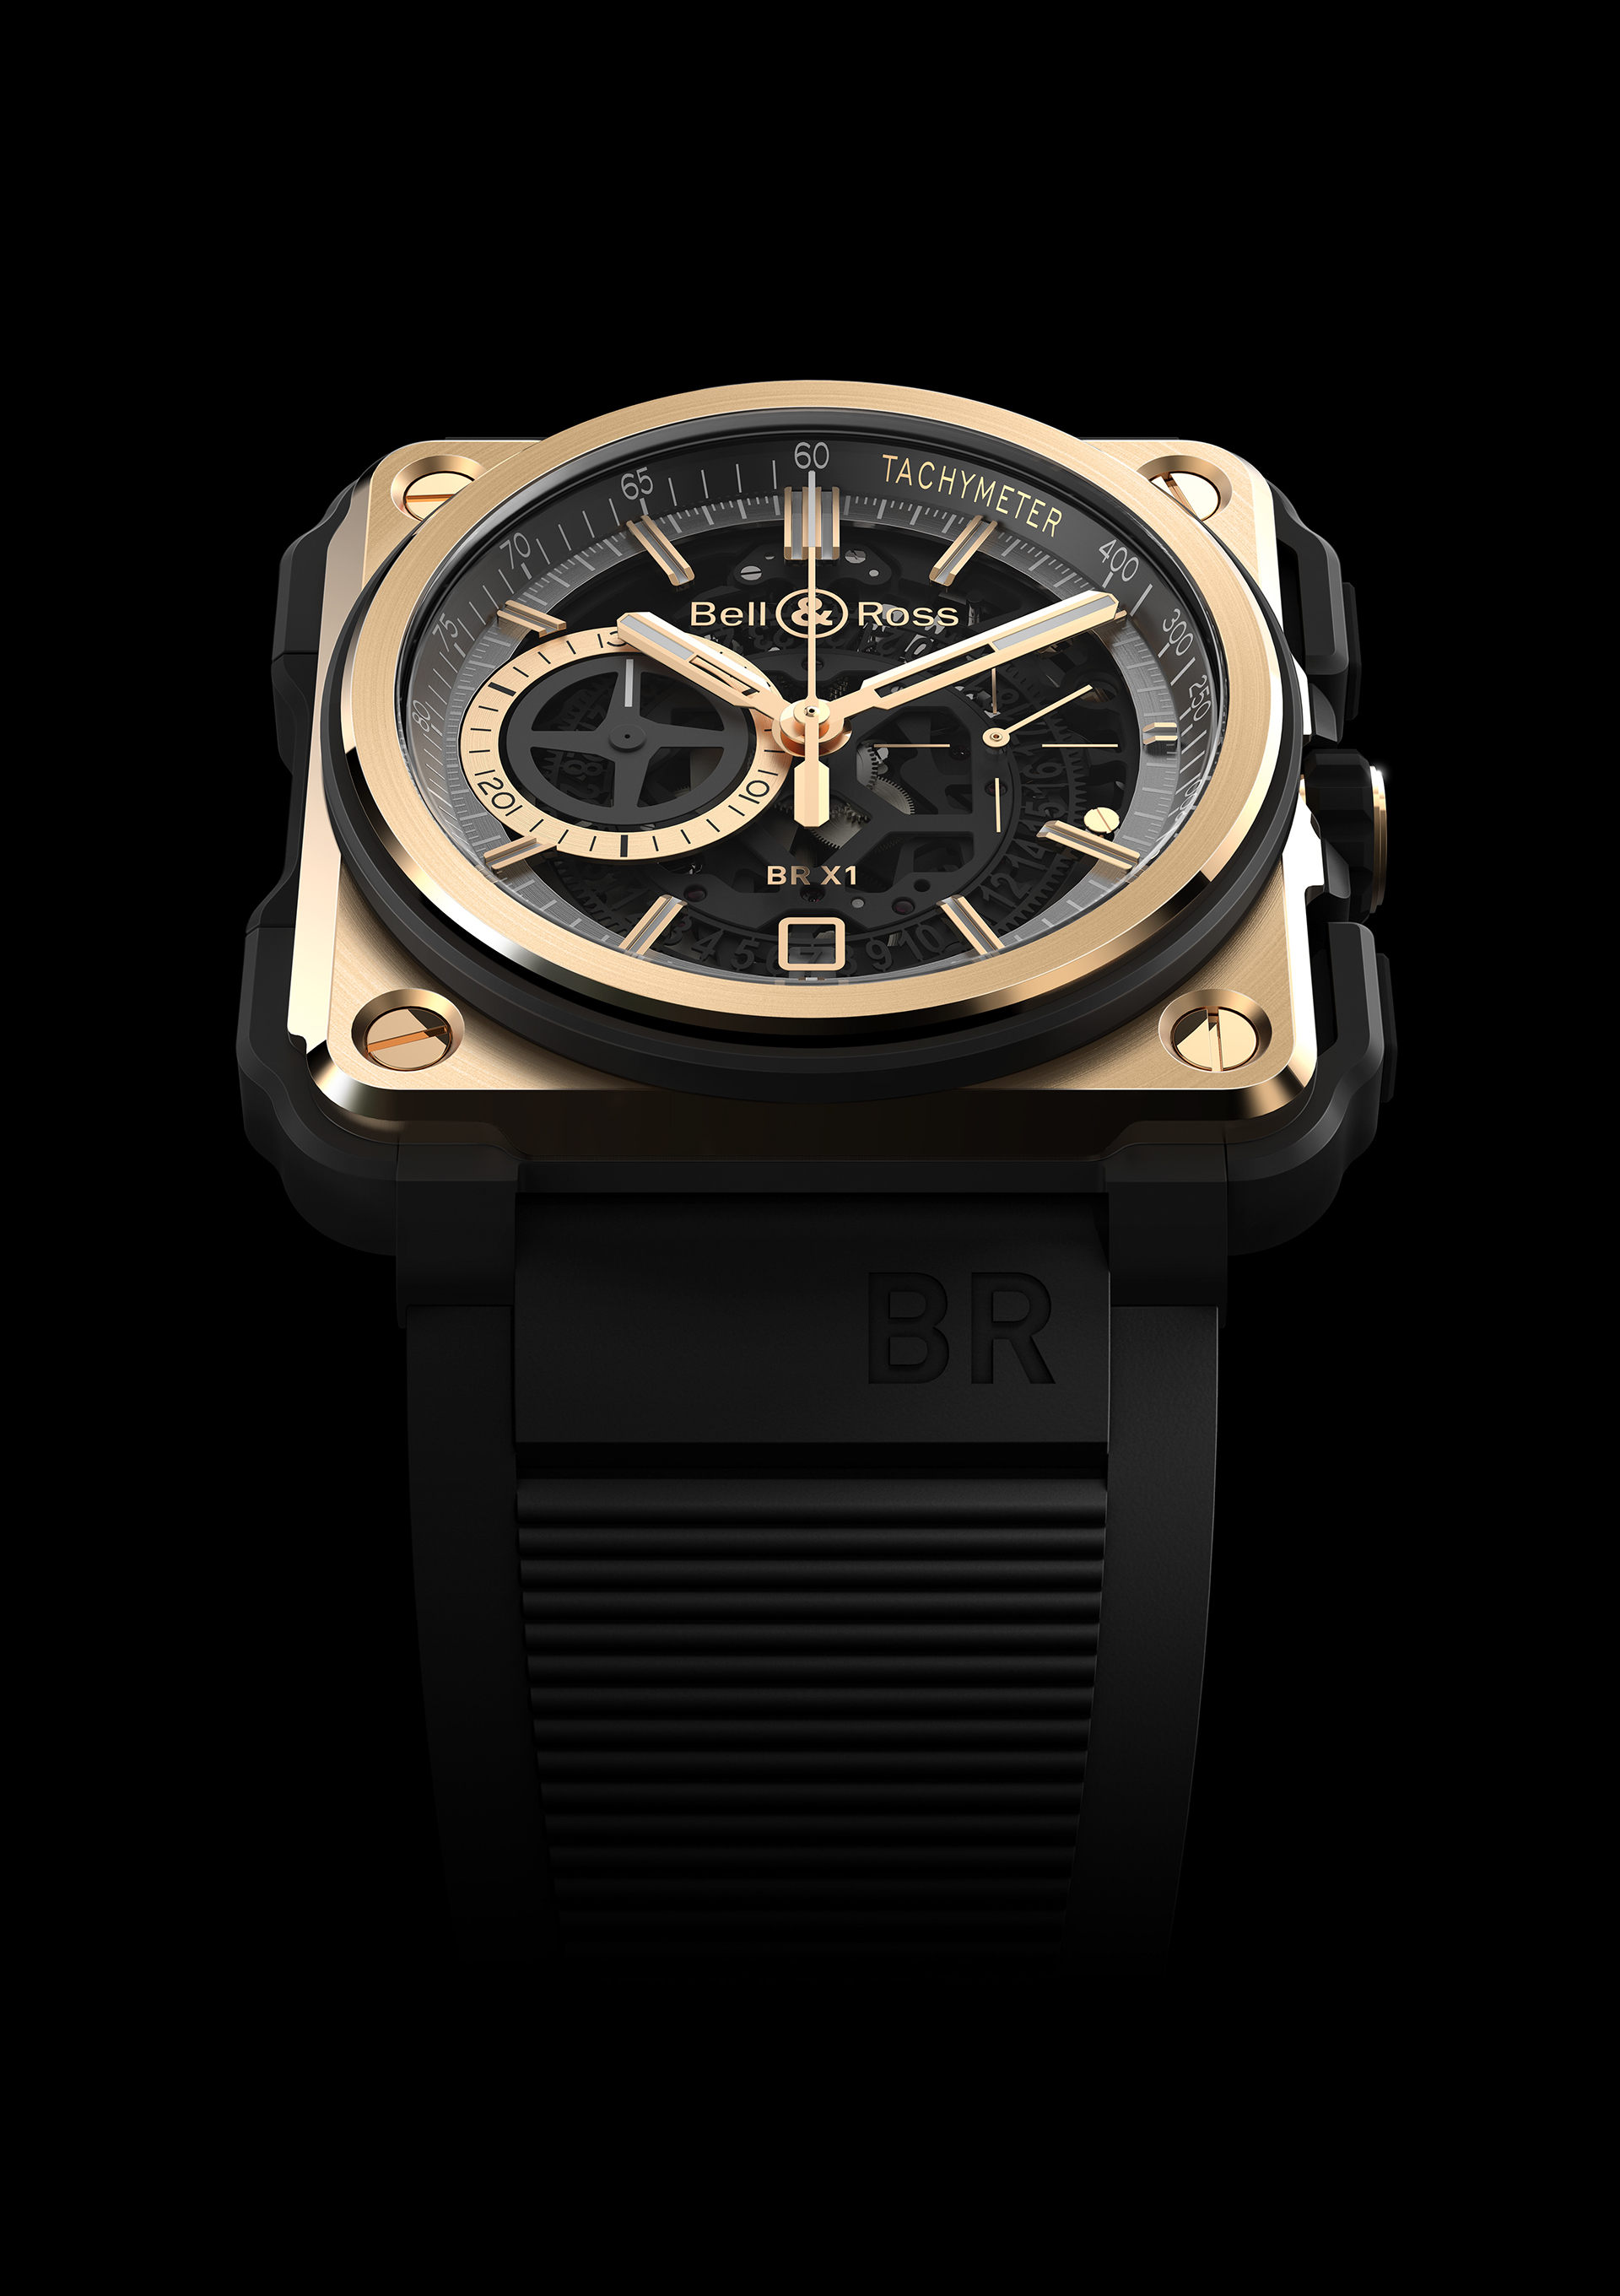 充满成熟气质的柏莱士bellross手表及brx1表带设计